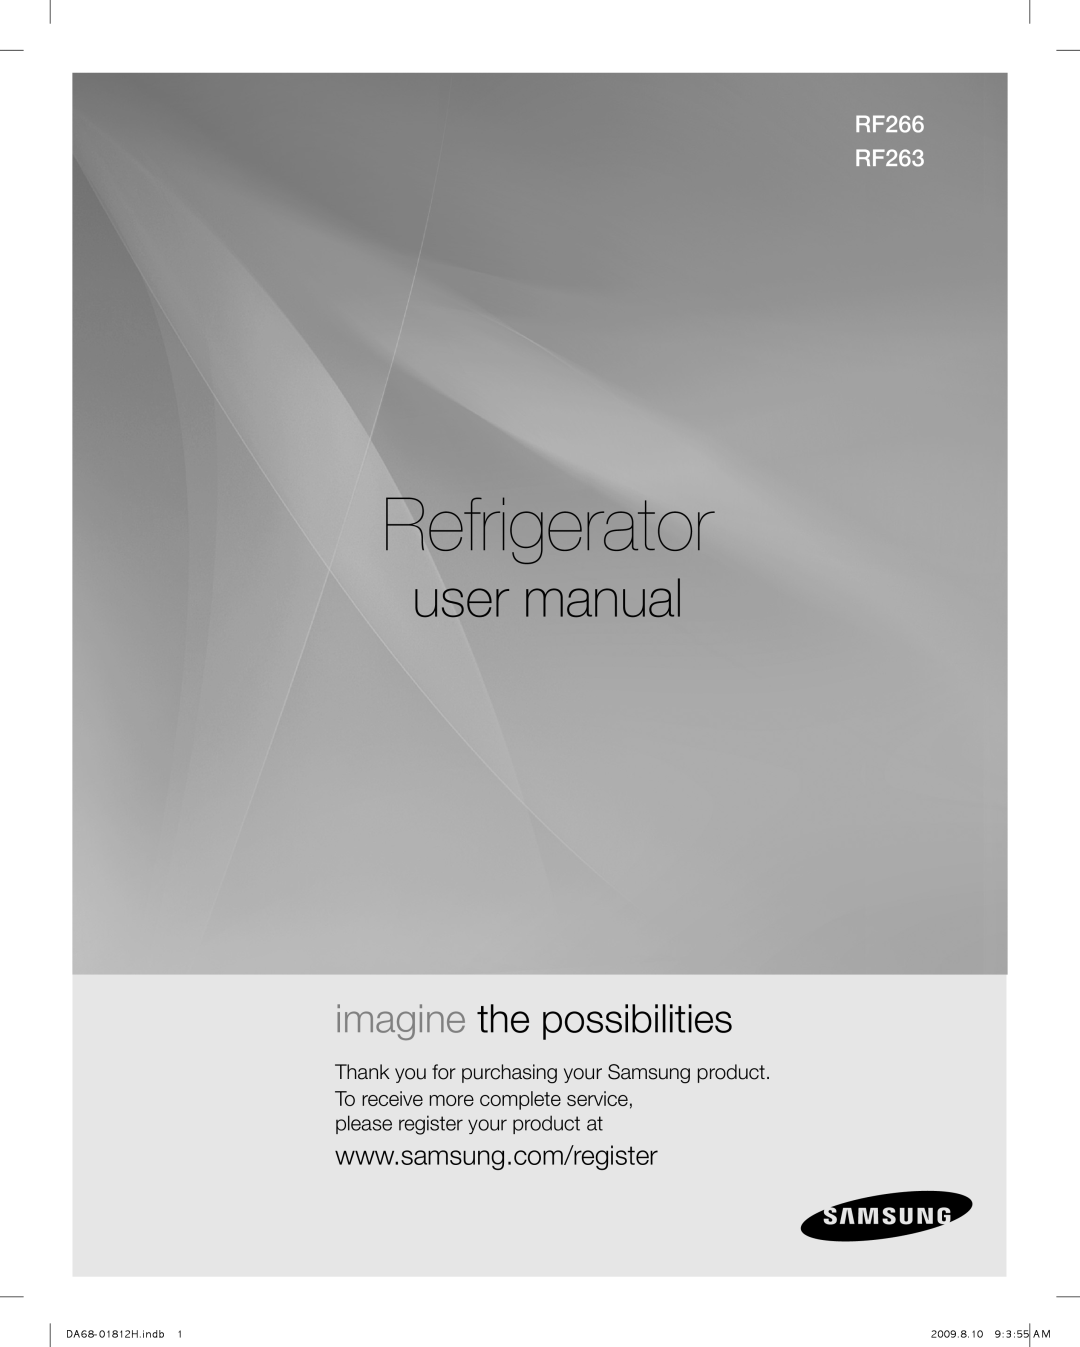 Samsung RF266AFBP, RF263AFBP, DA68-01812H user manual Refrigerator, imagine the possibilities, RF266 RF263 